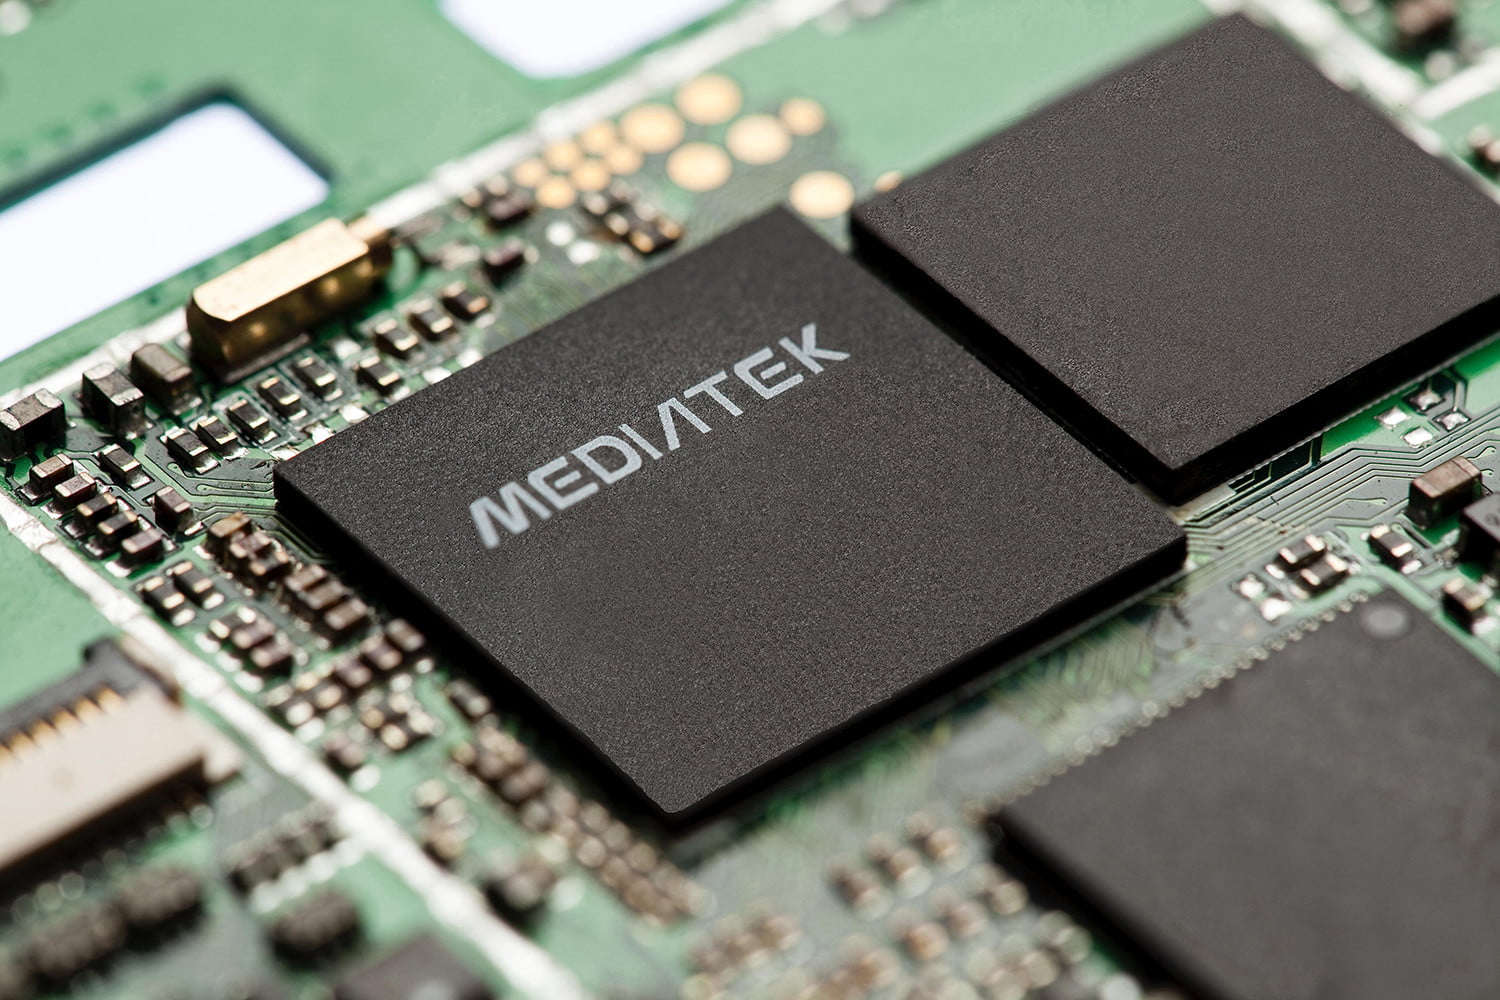 MediaTek กำลังพัฒนาชิปเซ็ต Helio P80 และ P90 หลังจาก P60 ประสบความสำเร็จ